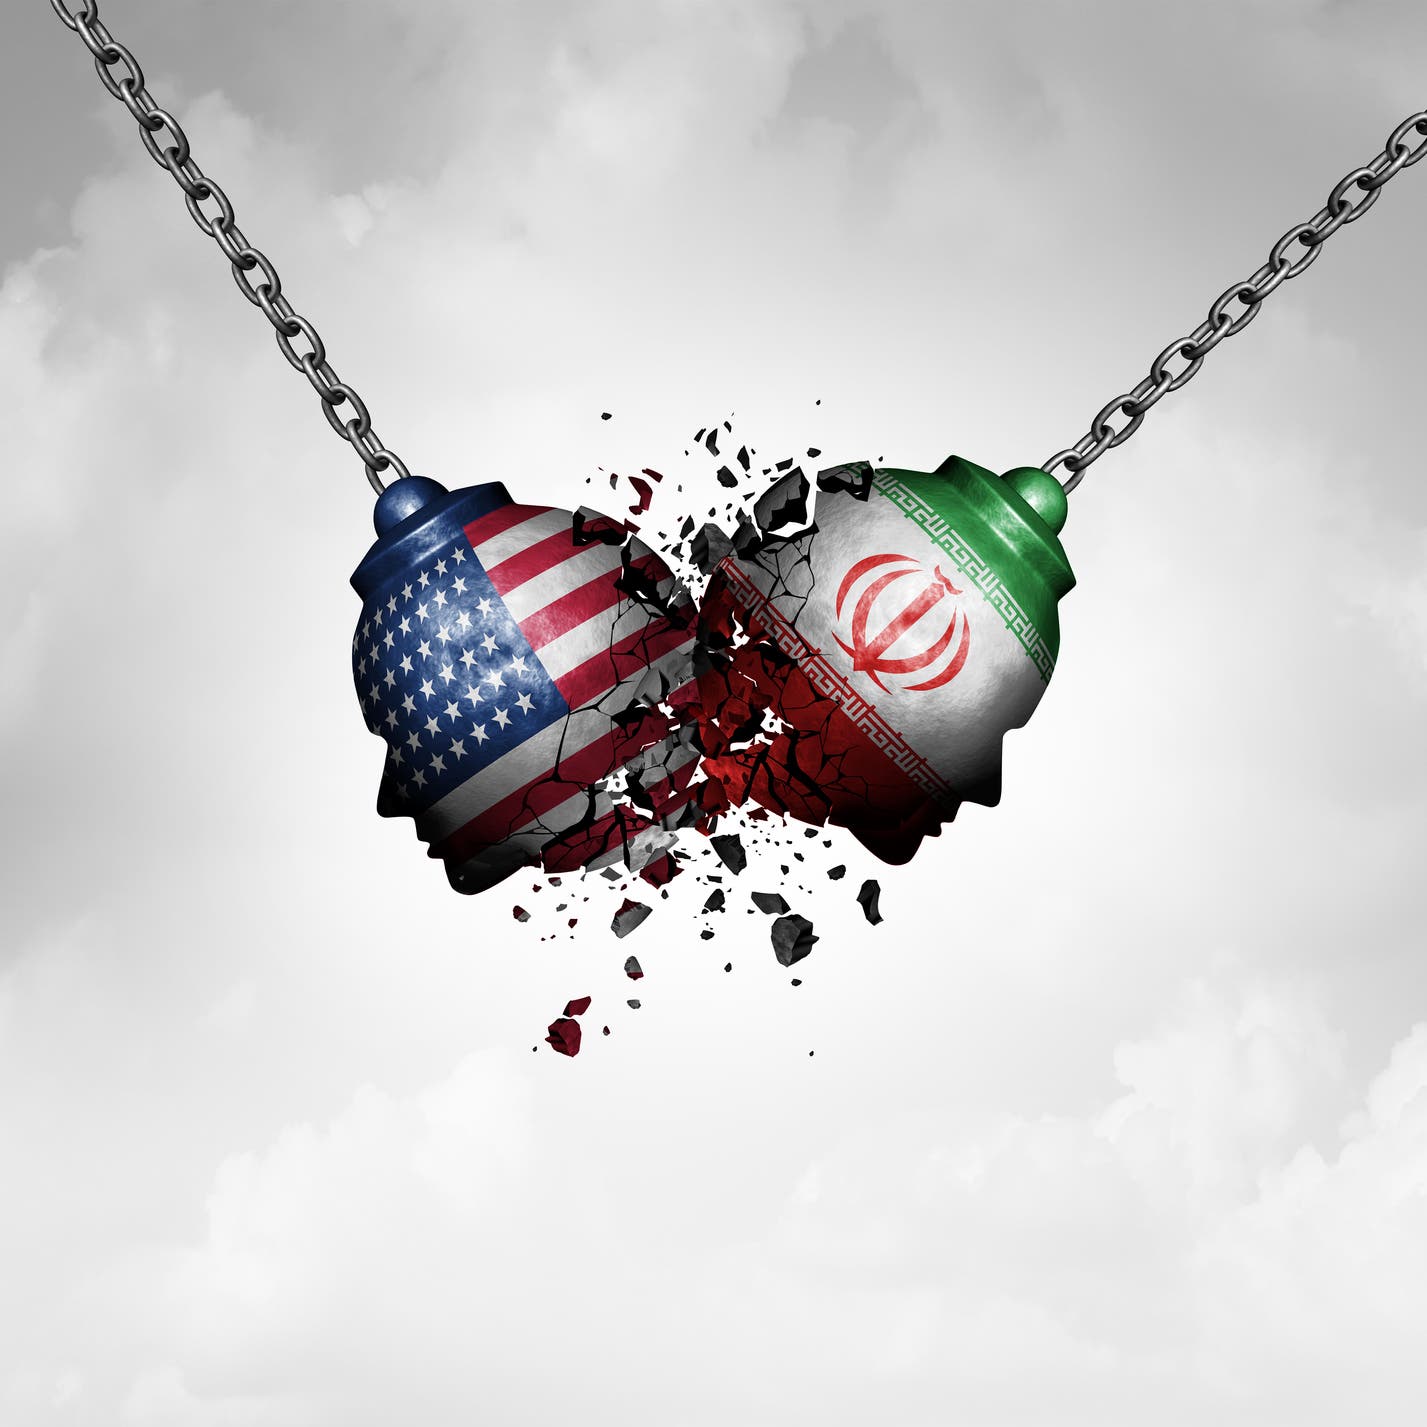 واشنطن: بدء إيران بتخصيب اليورانيوم ابتزاز نووي